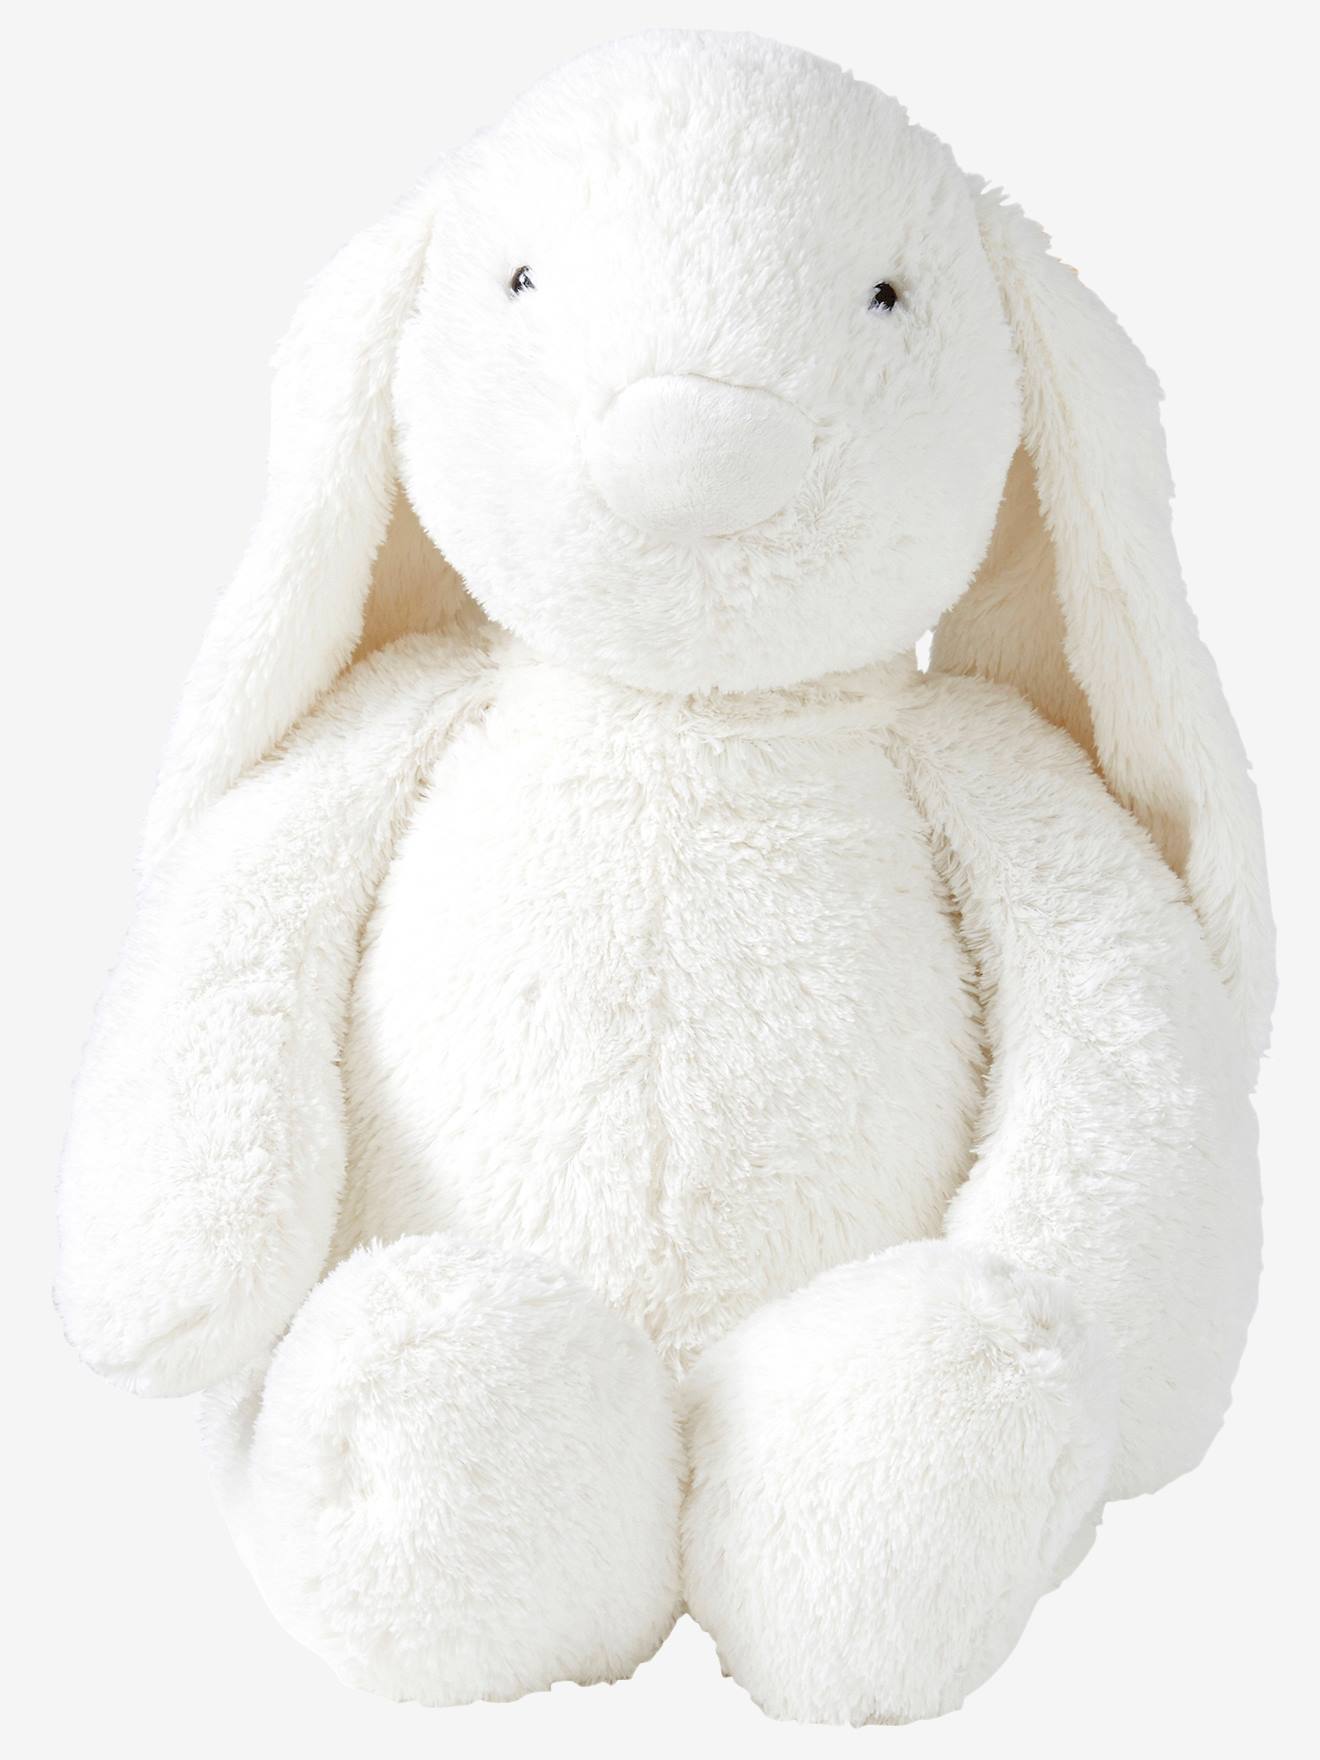 bunny cuddly toy